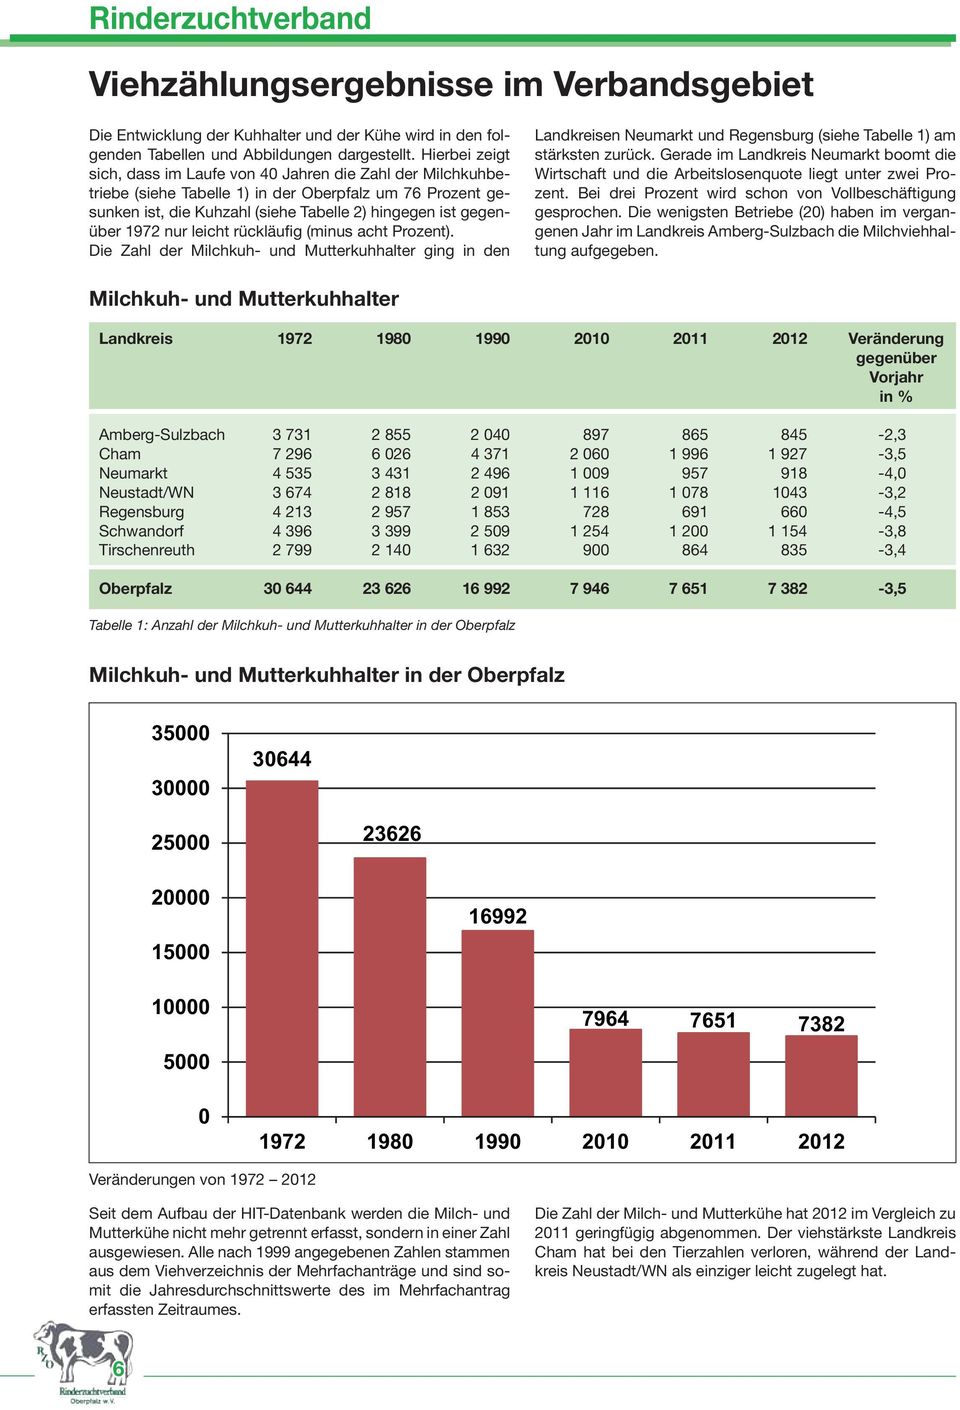 nur leicht rückläufig (minus acht Prozent). Die Zahl der Milchkuh- und Mutterkuhhalter ging in den Landkreisen Neumarkt und Regensburg (siehe Tabelle 1) am stärksten zurück.